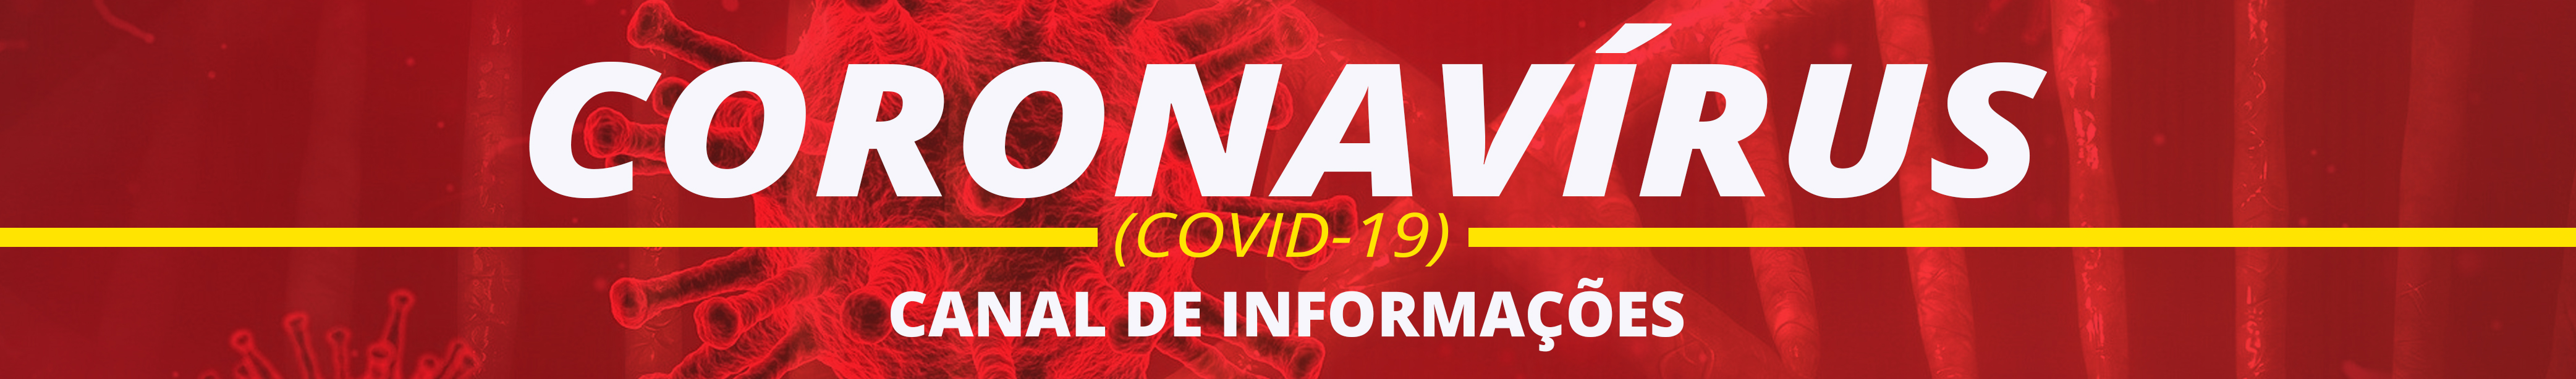 Canal de Informações (COVID-19)